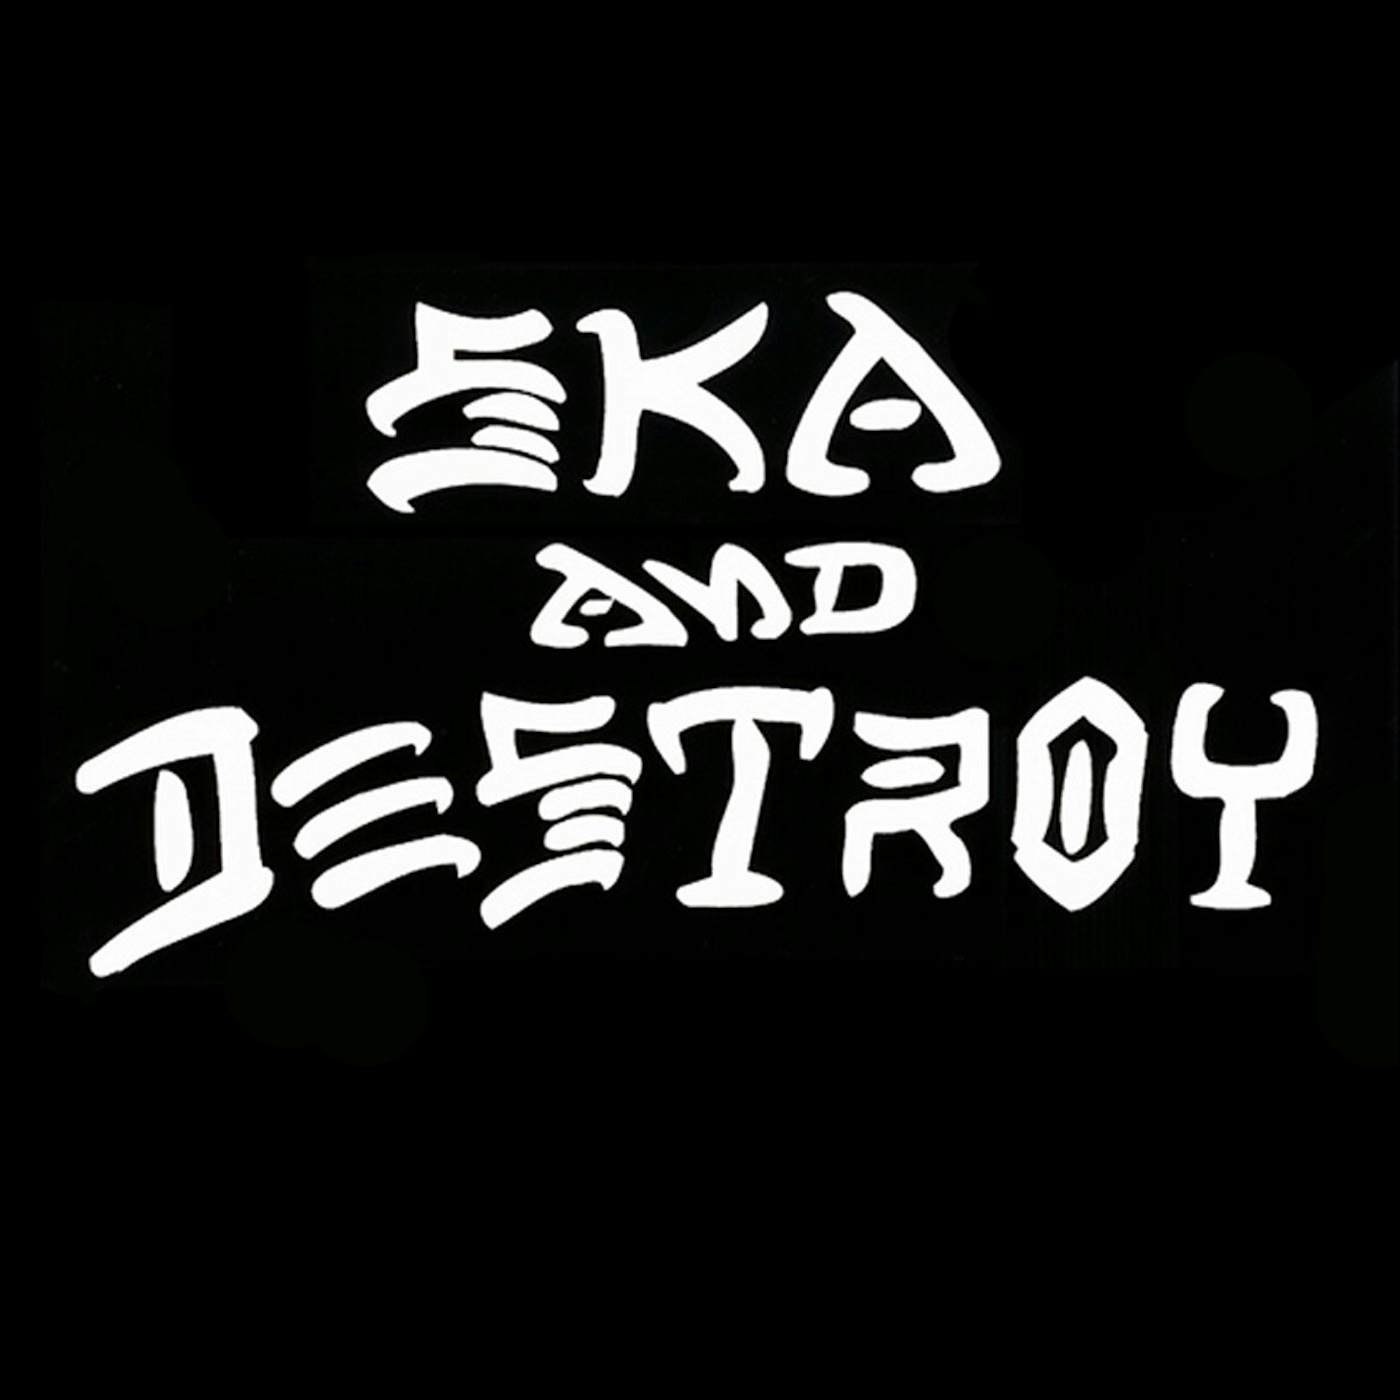 Road Dog Merch Ska & Destroy Shirt